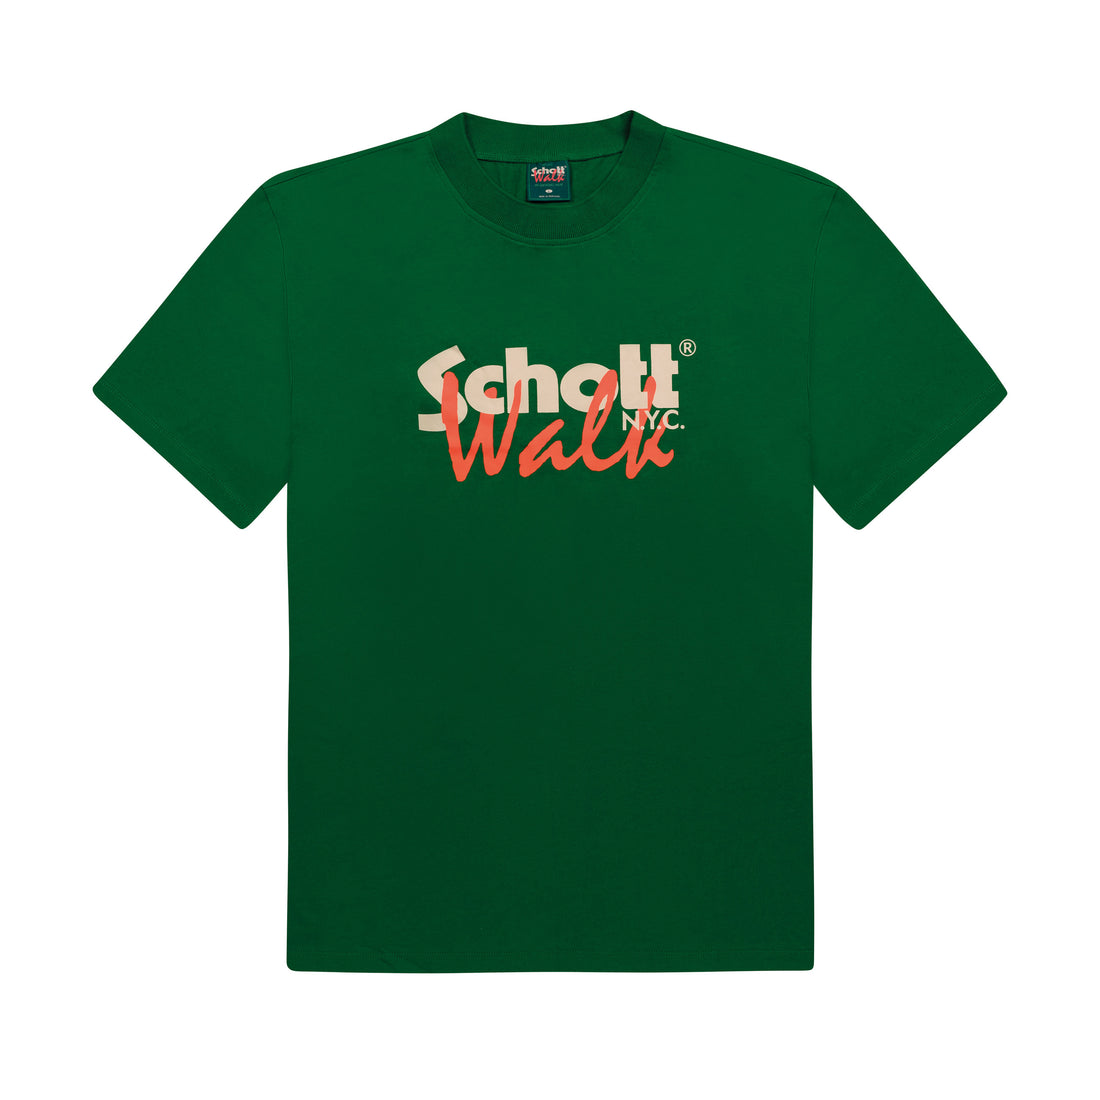 Walk in Paris x Schott NYC - Le T-shirt vert "Paris New York"